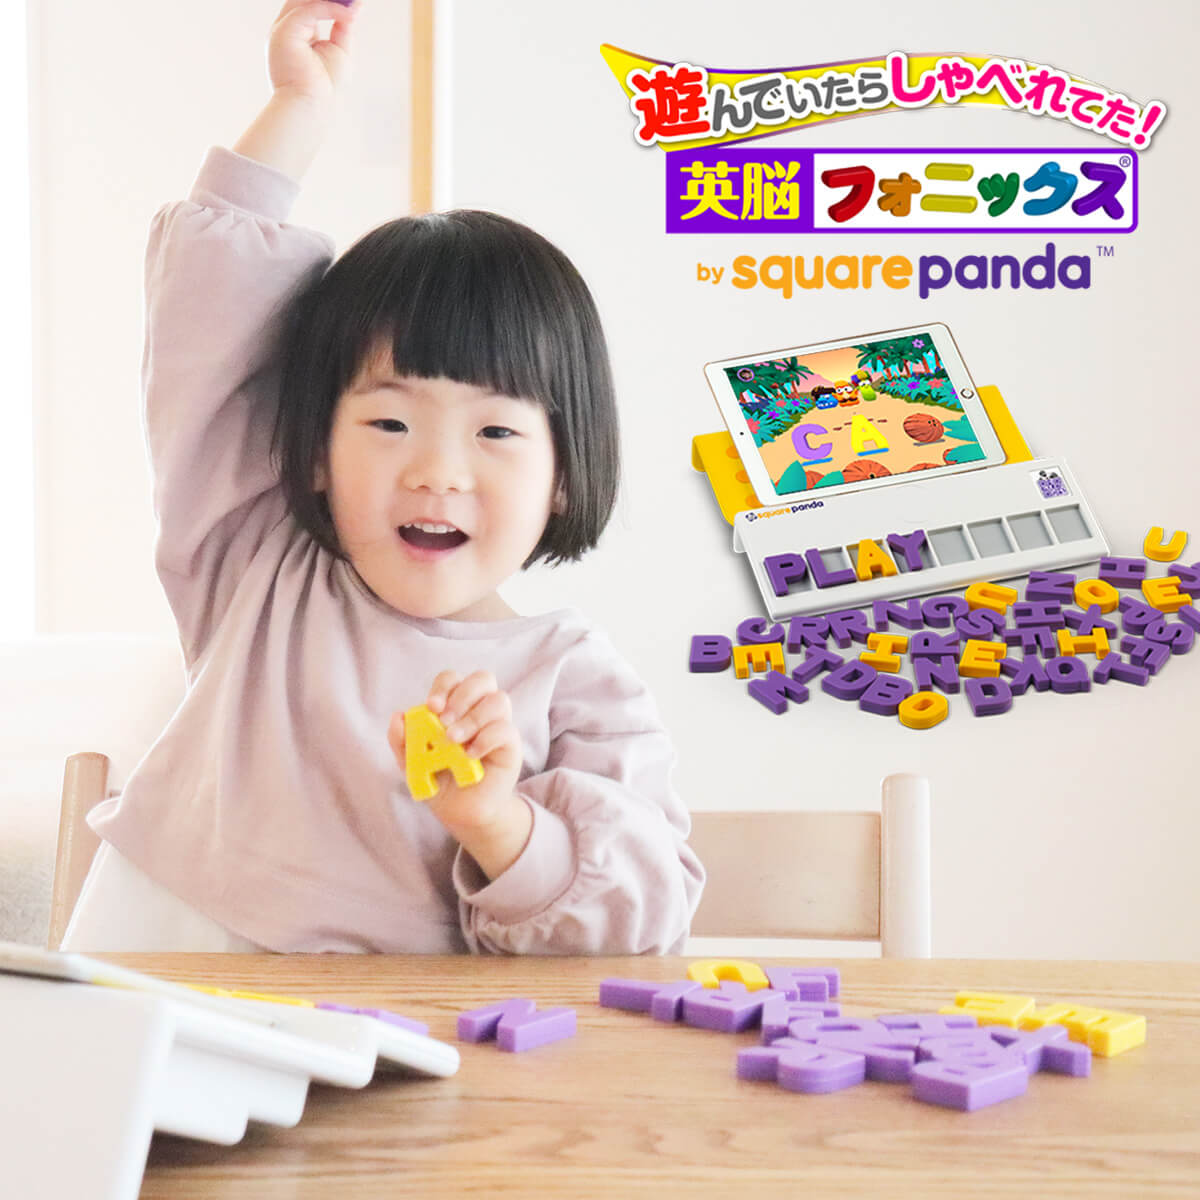 英脳フォニックス by square panda